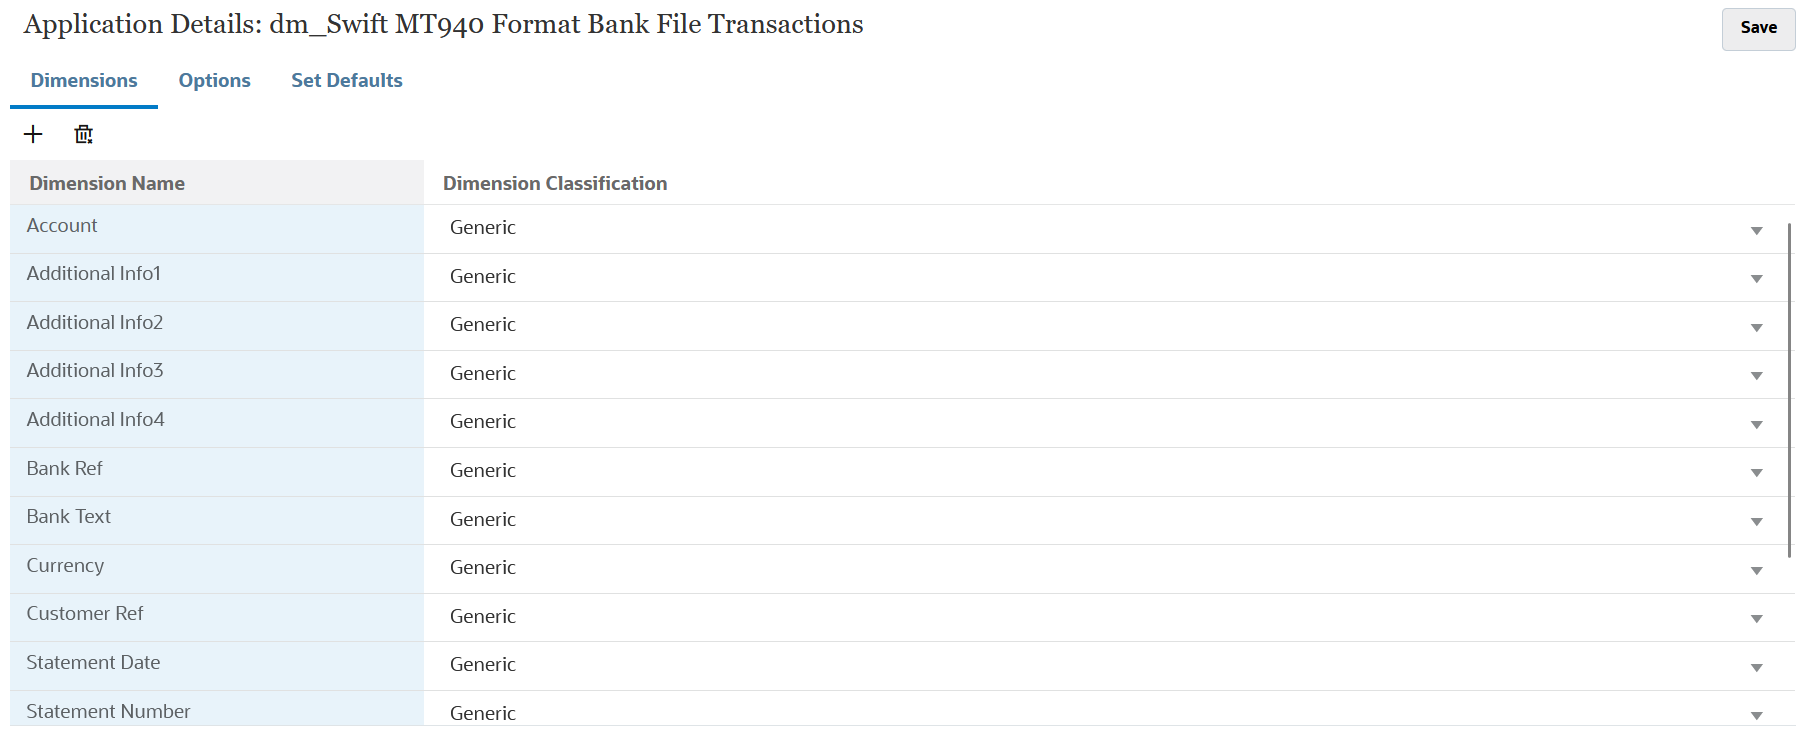 Immagine che mostra i dettagli delle dimensioni per le transazioni file bancario formato SWIFT MT940.